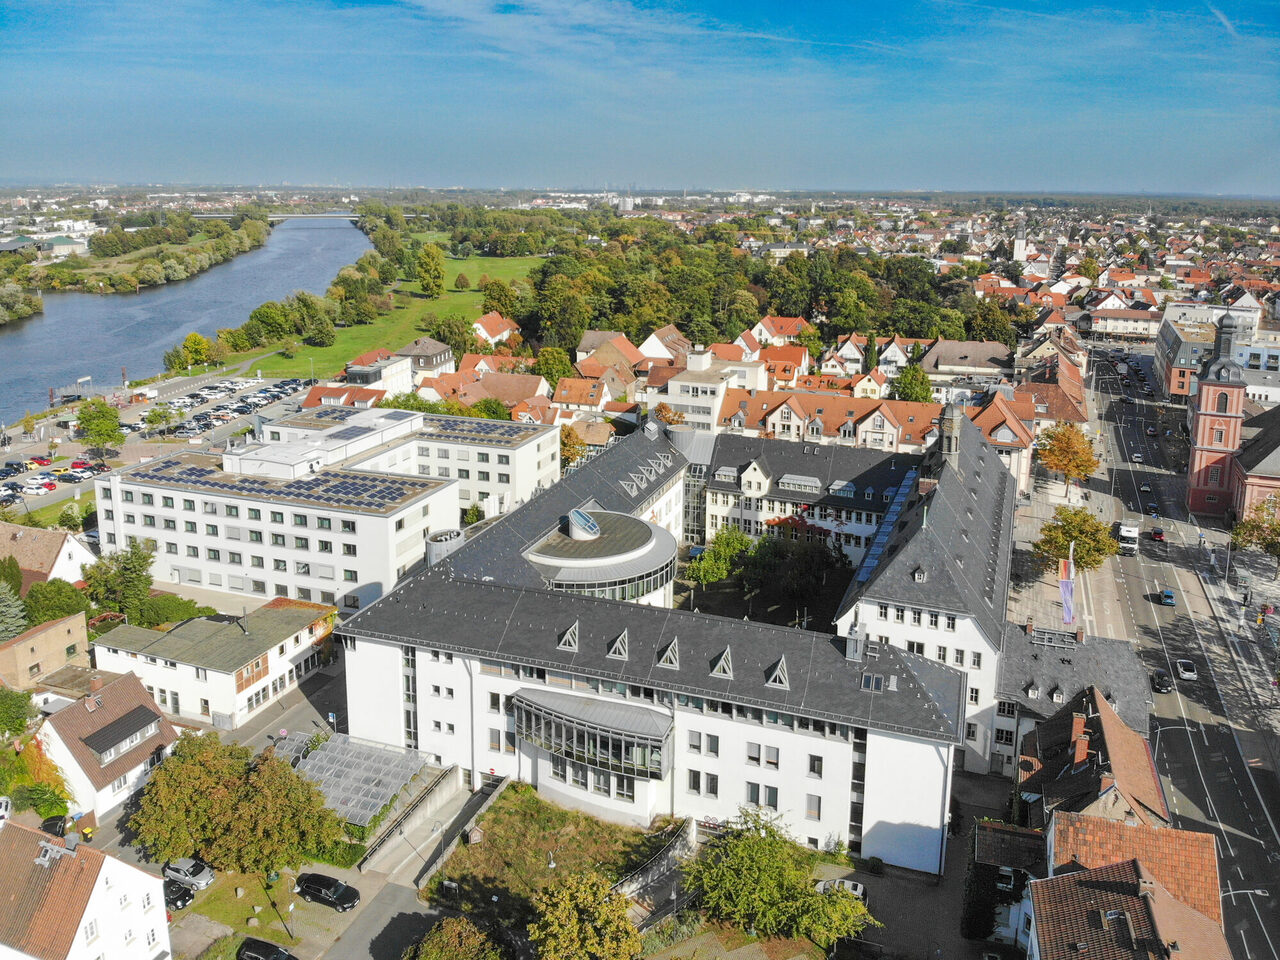 Luftbild Rathaus Stadt Rüsselsheim am Main